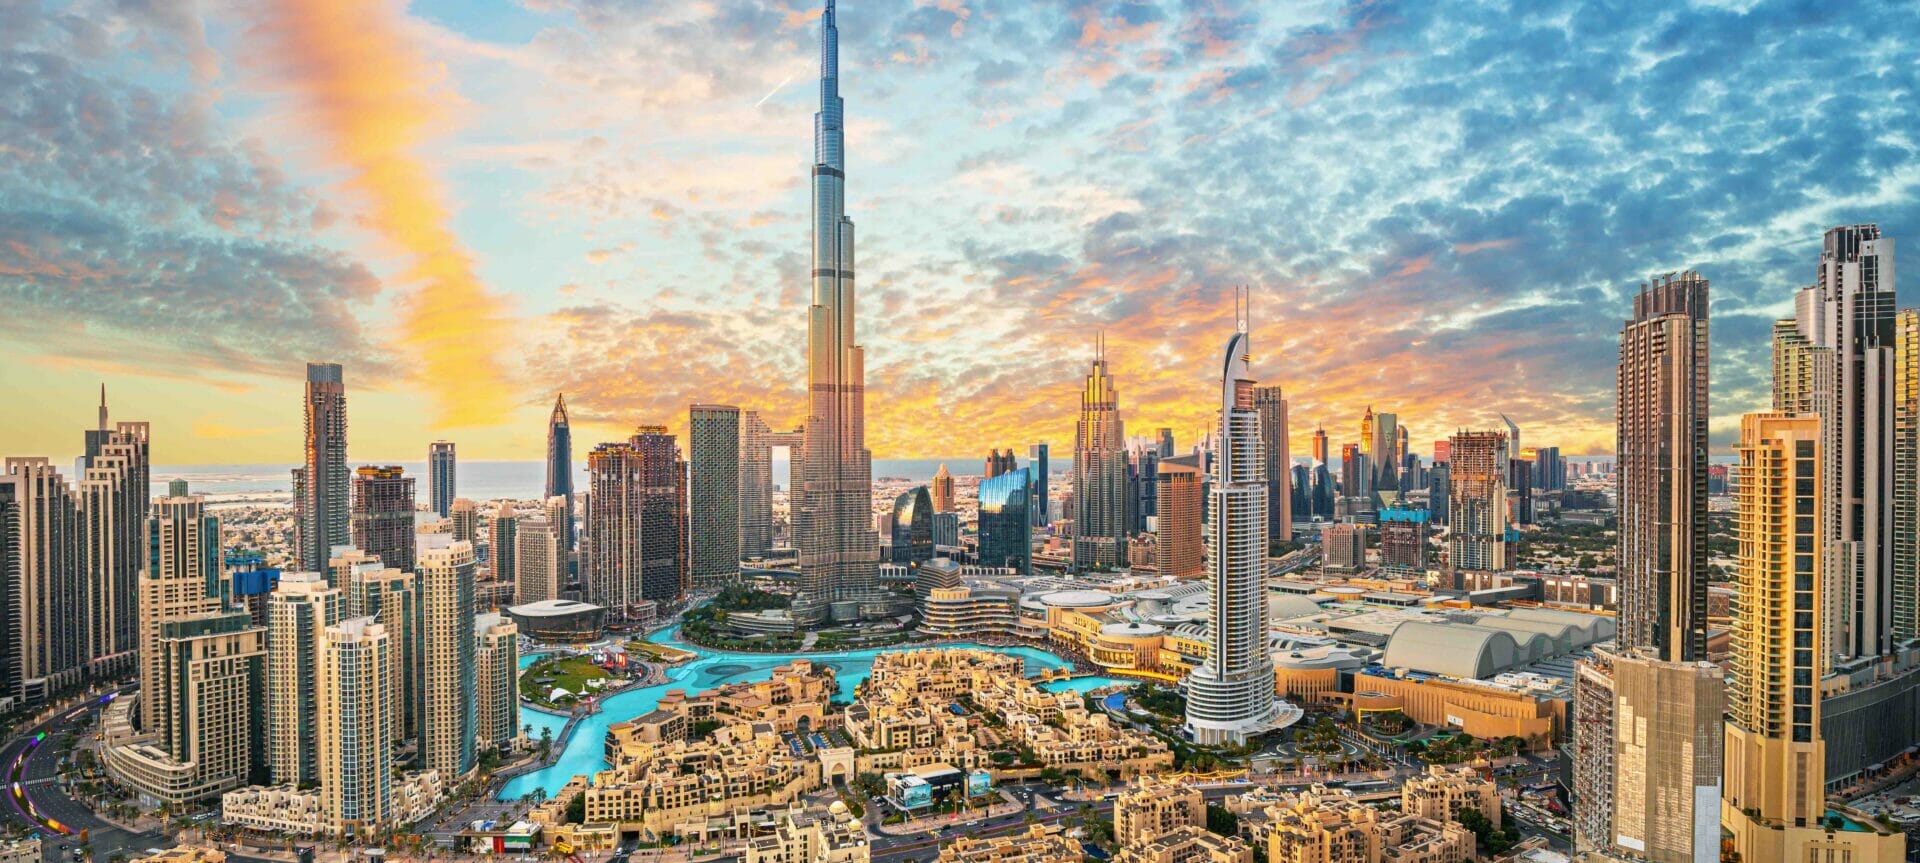 Dubai downtown_adobe